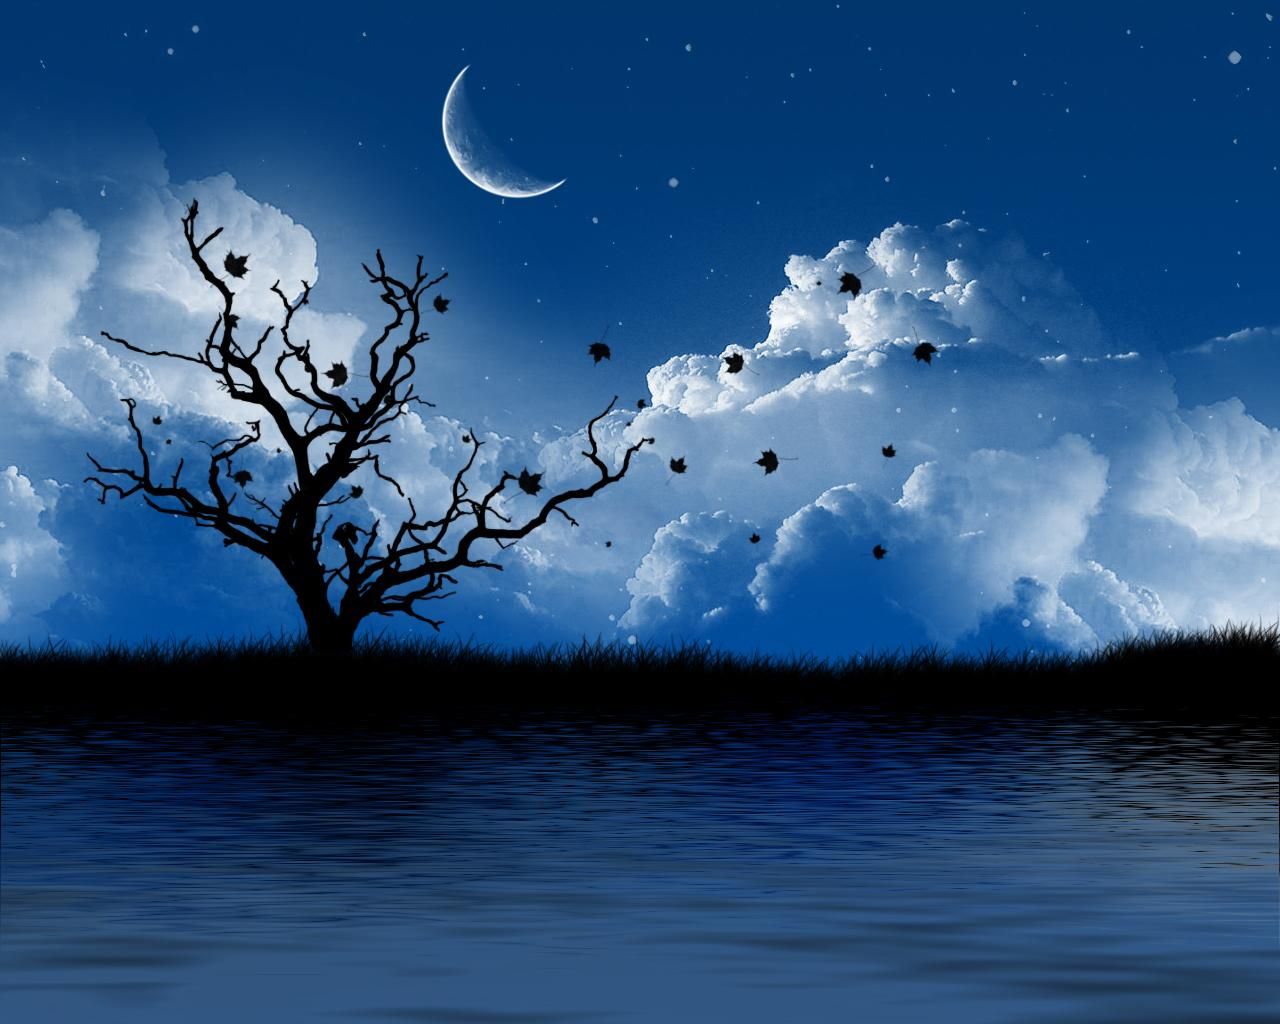 زیباترین بک گراند منظره رمانتیک دریا در شب با هلال ماه 